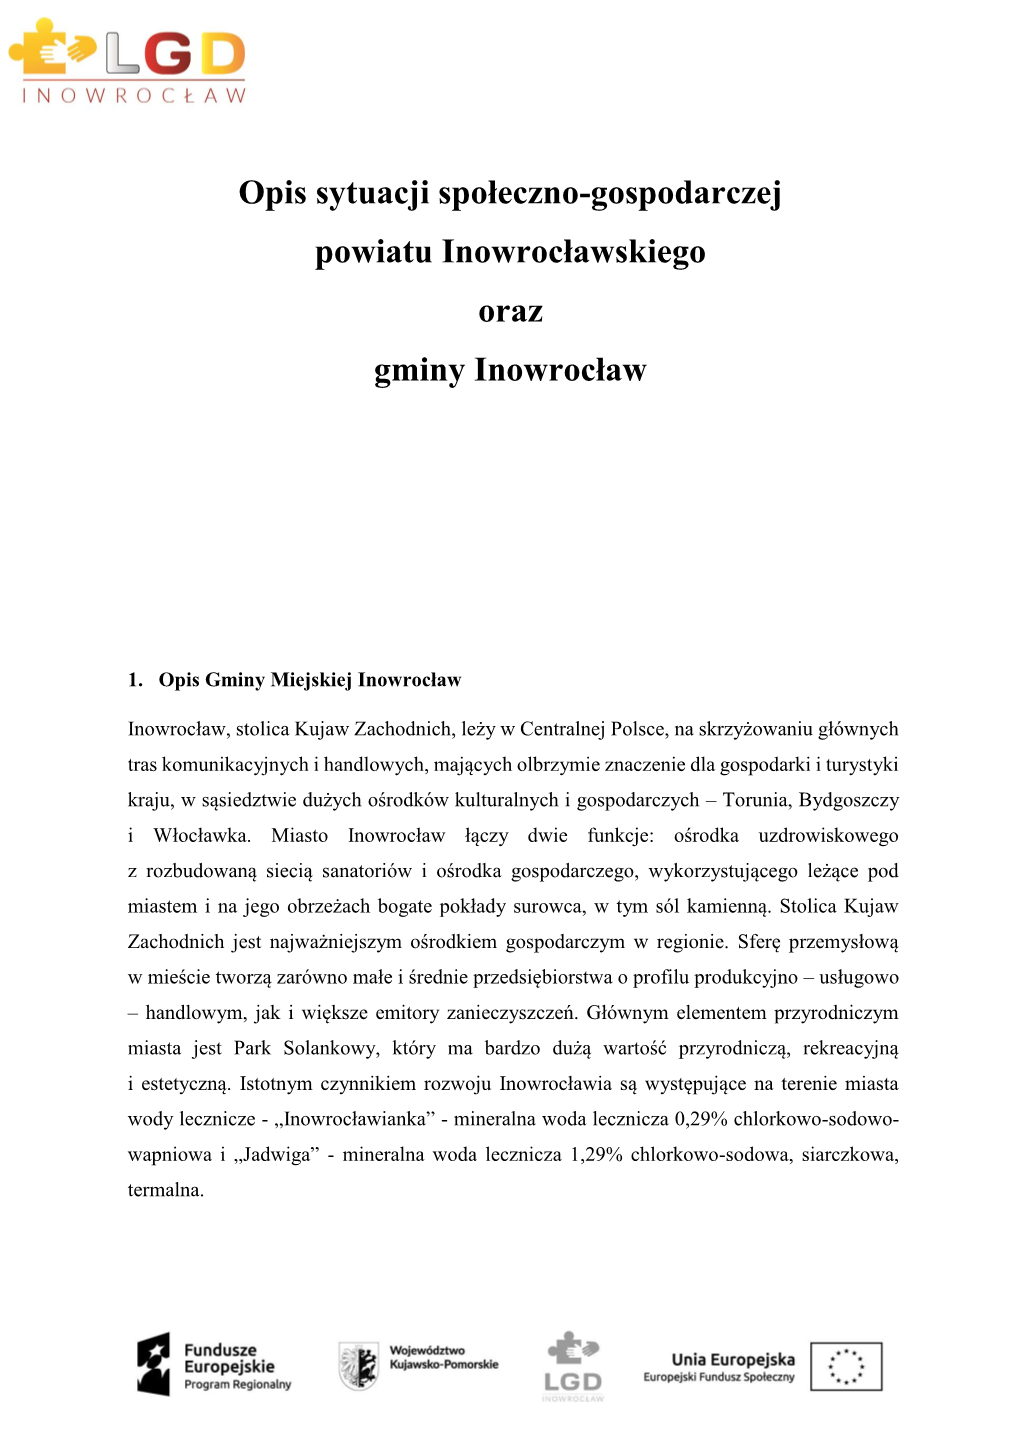 Opis Sytuacji Społeczno-Gospodarczej Powiatu Inowrocławskiego Oraz Gminy Inowrocław